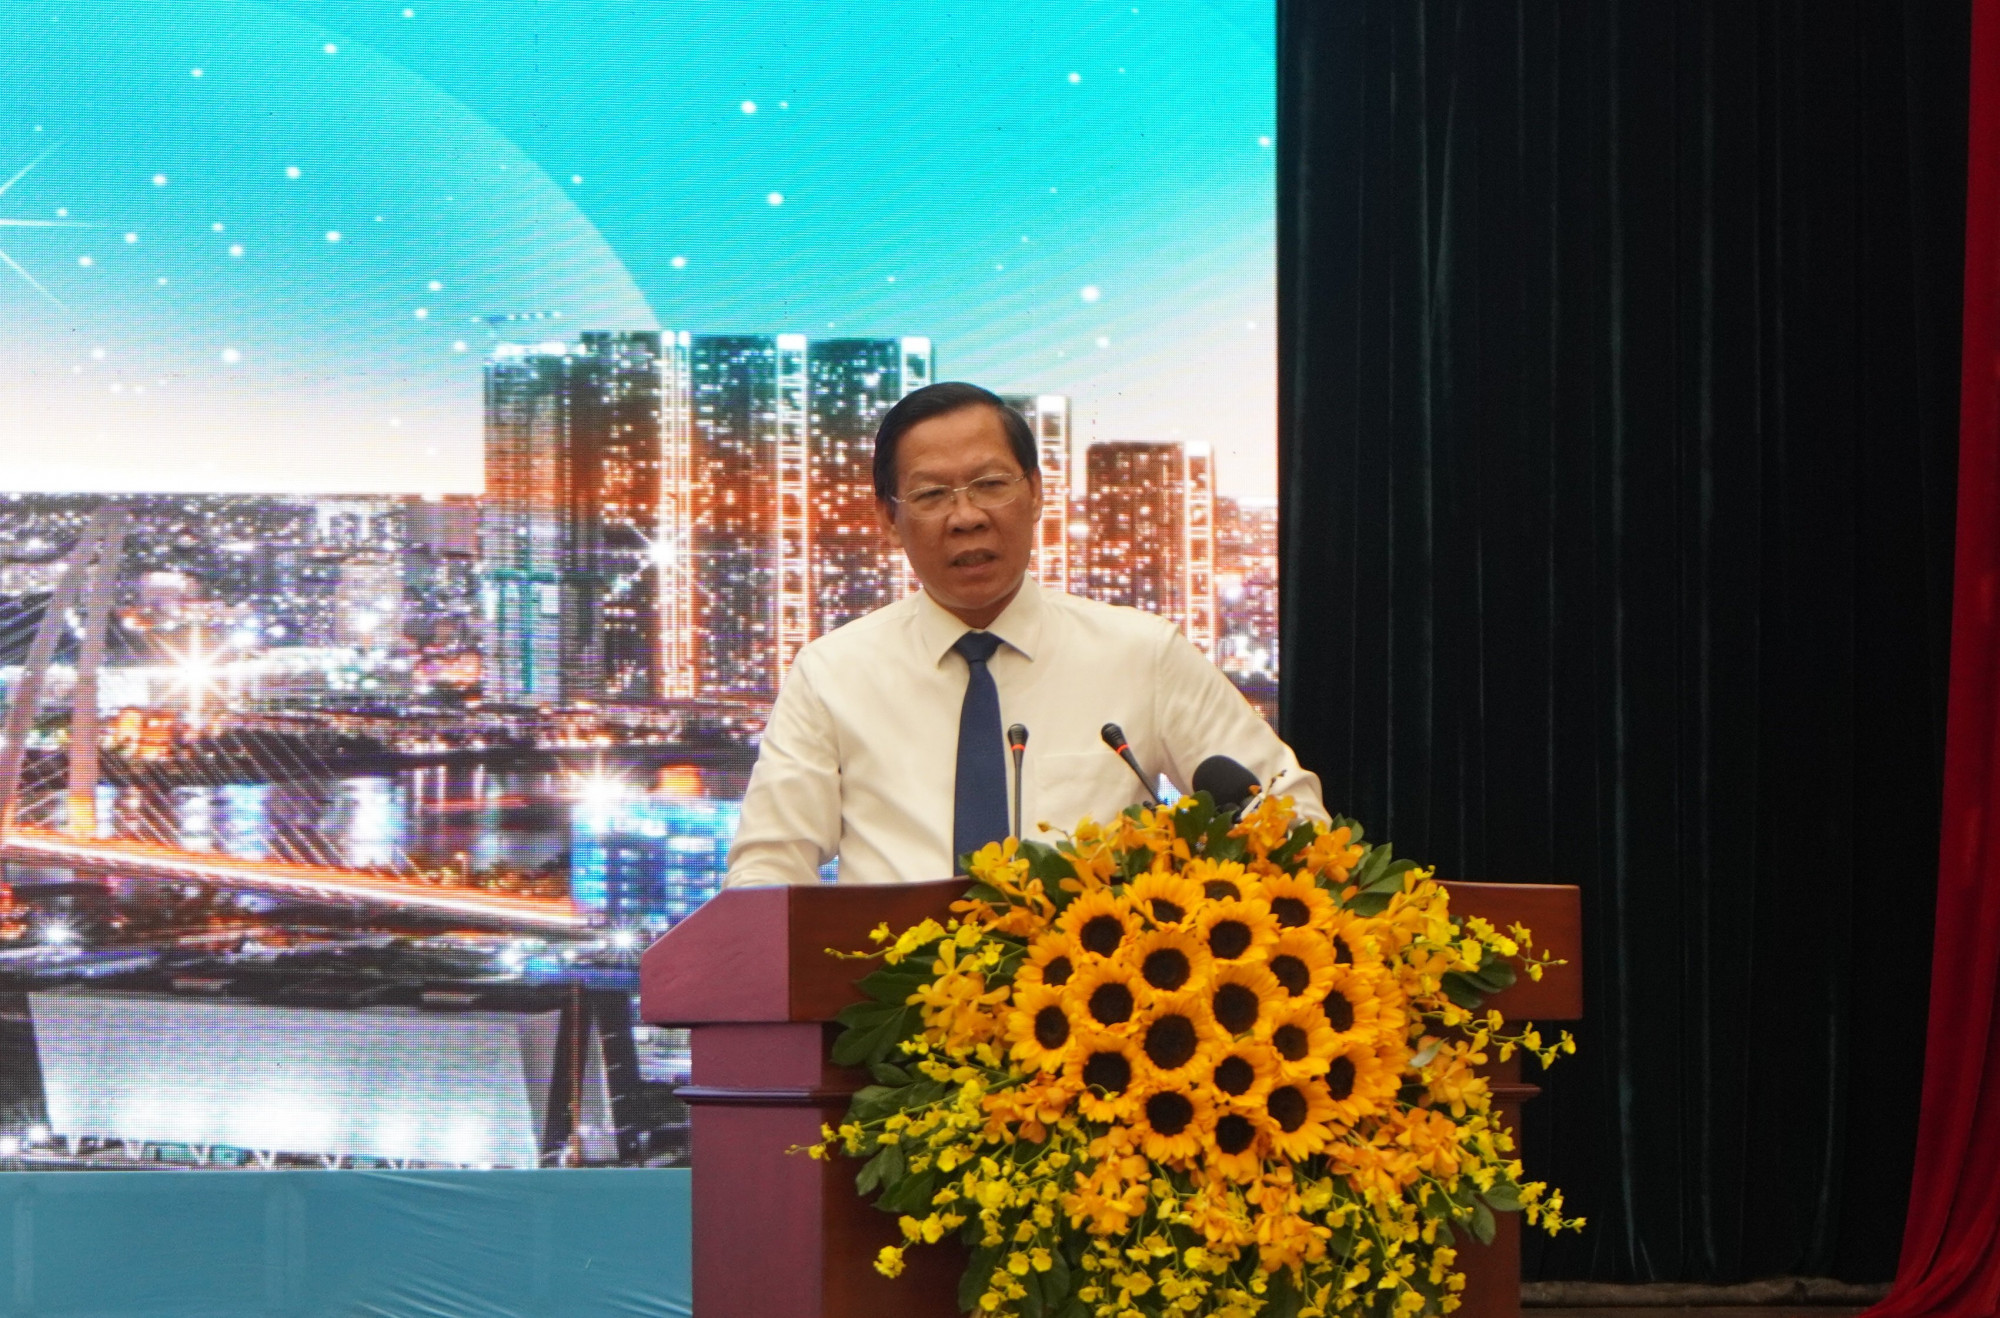 Từ cuối năm 2021 đến nay, đi đâu cũng nghe DN phản ánh về thiếu vốn, lãi suất cao. Ông Phan Văn Mãi - Chủ tịch UBND TPHCM phát biểu tại hội nghị.